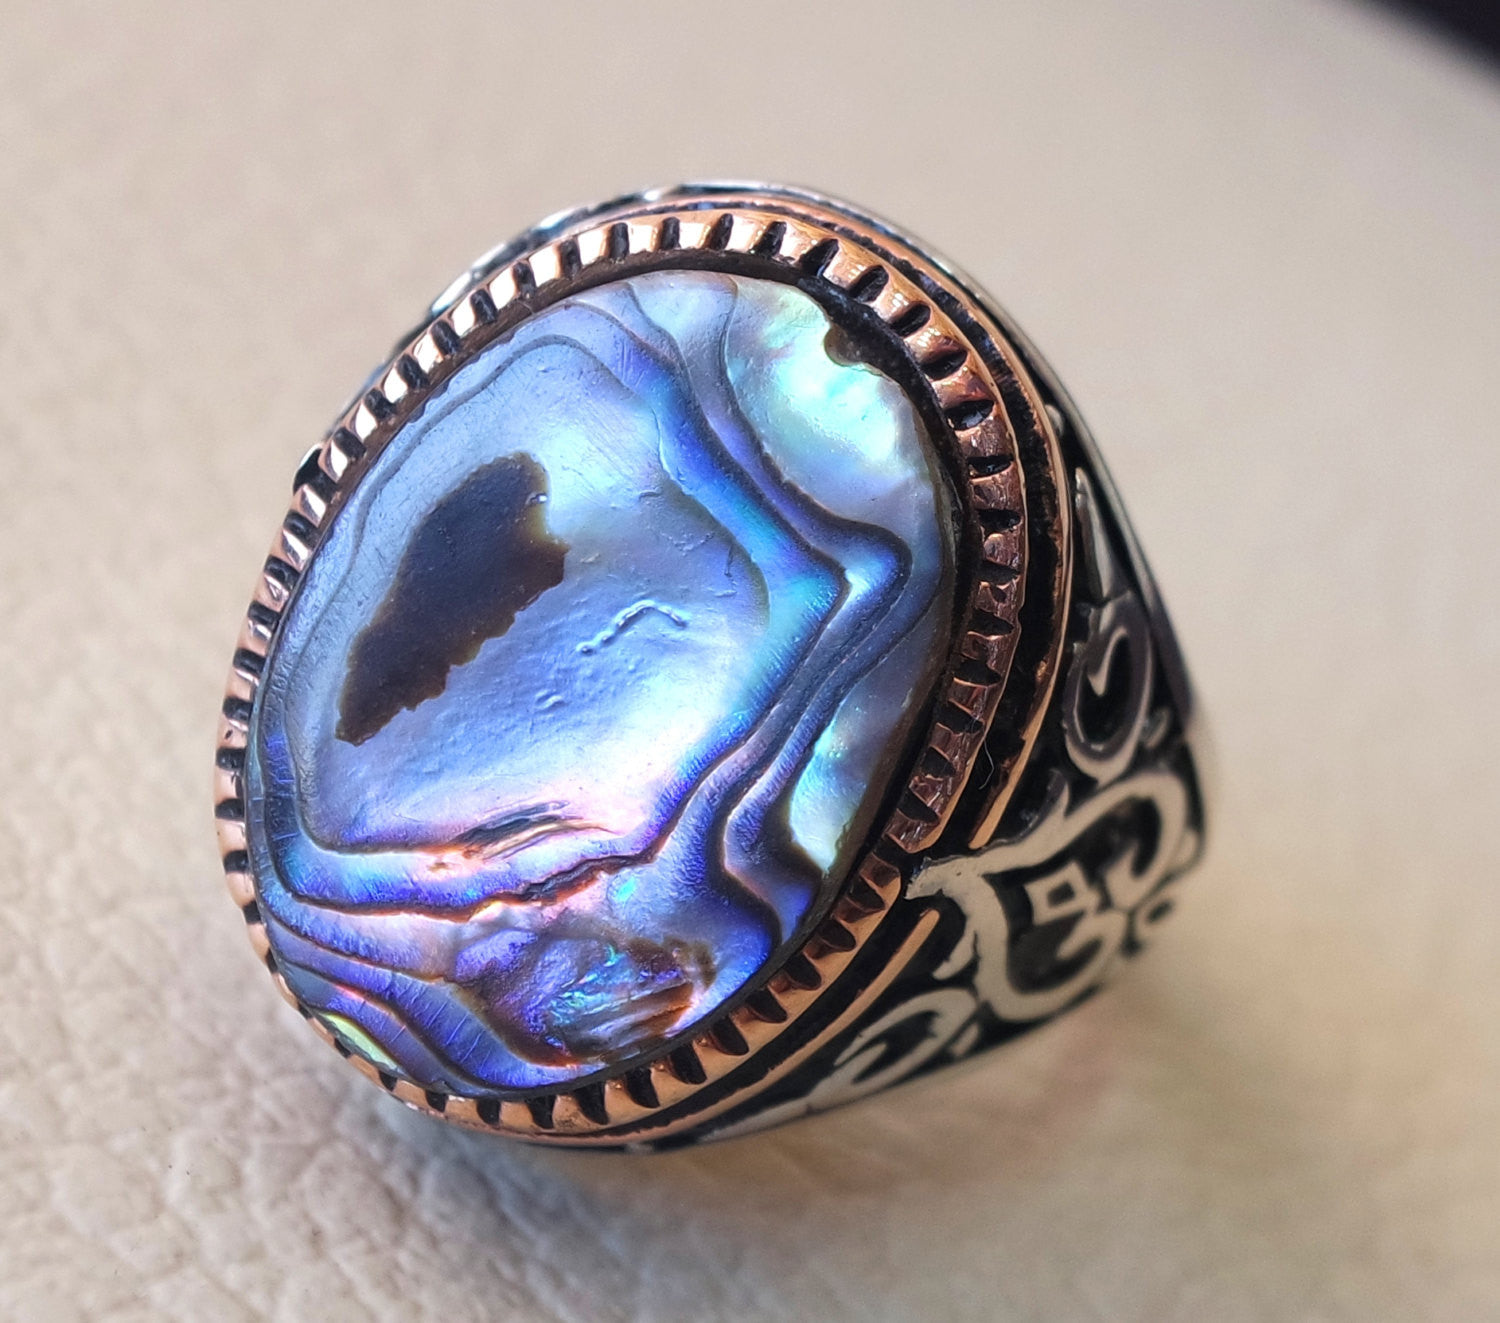 Abulón Shell colorido pesado anillo de plata estilo otomano todos los tamaños de los hombres de la joyería único regalo de todos los tamaños envío rápido marco de bronce